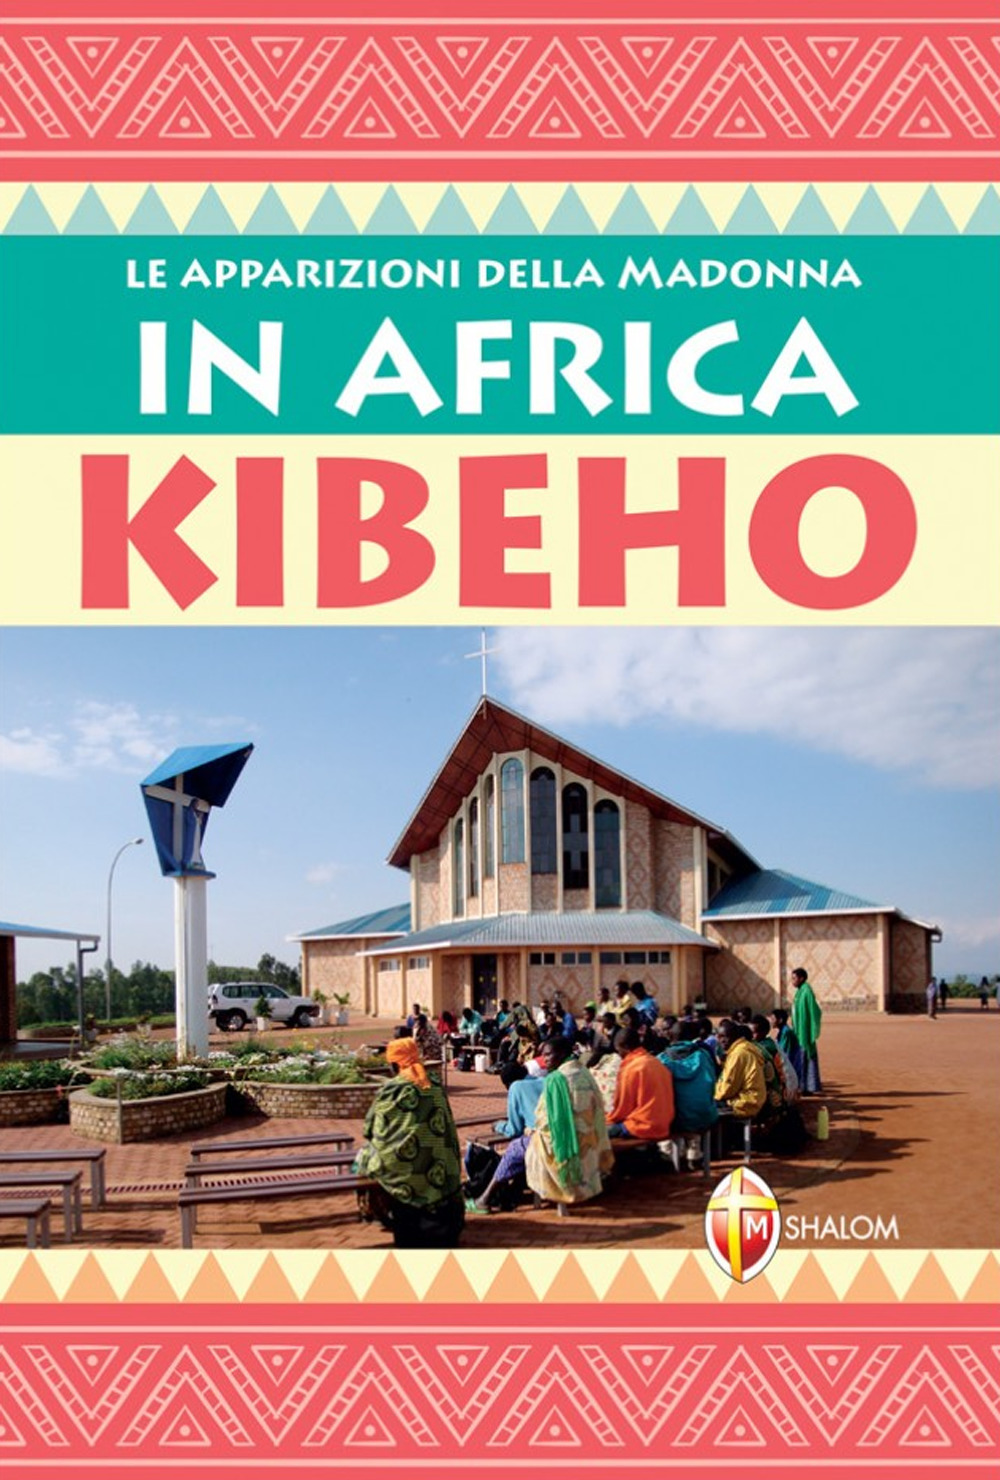 Le apparizioni della Madonna in Africa: Kibeho